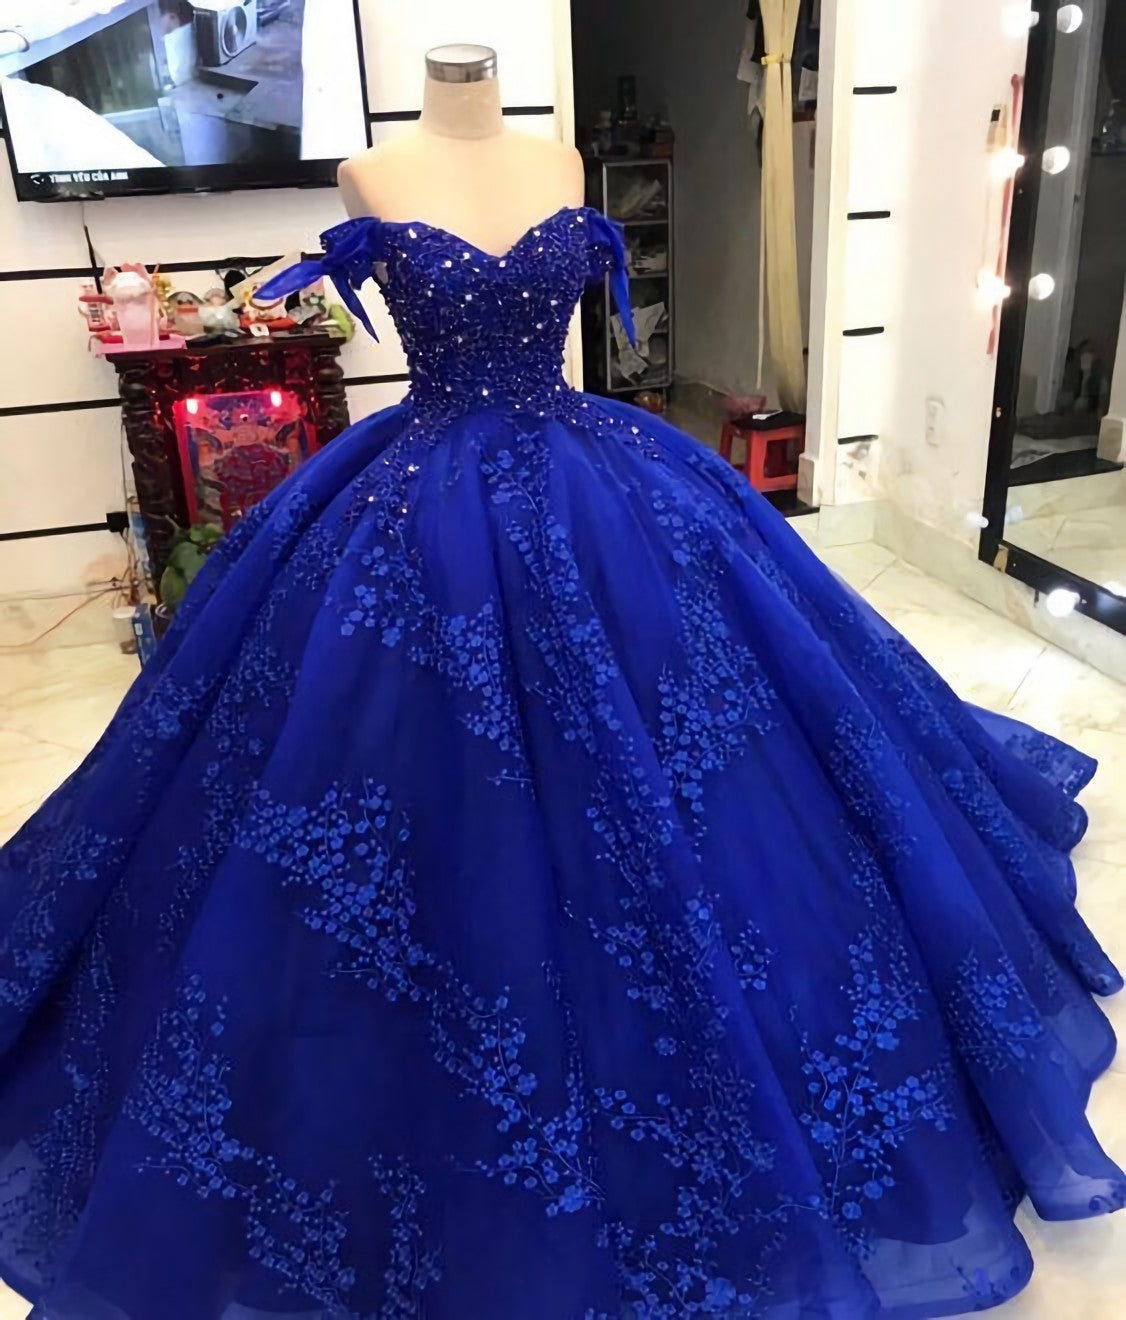 Quince Dress, Long Blue Ball Gown Evening Dress, Prom Dress